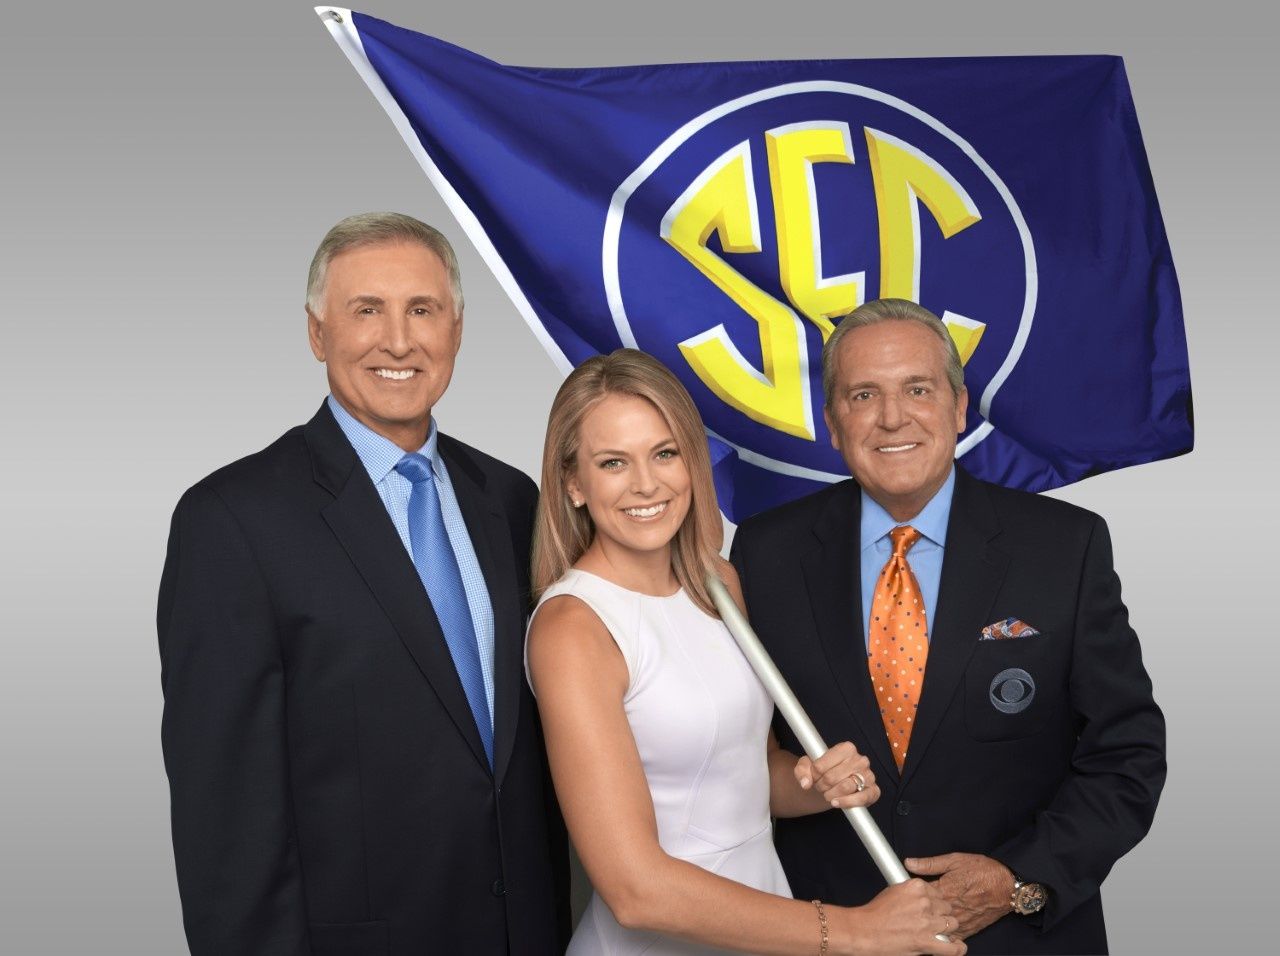 Gary Danielson Jamie Erdahl and Brad Nessler holding the SEC flag